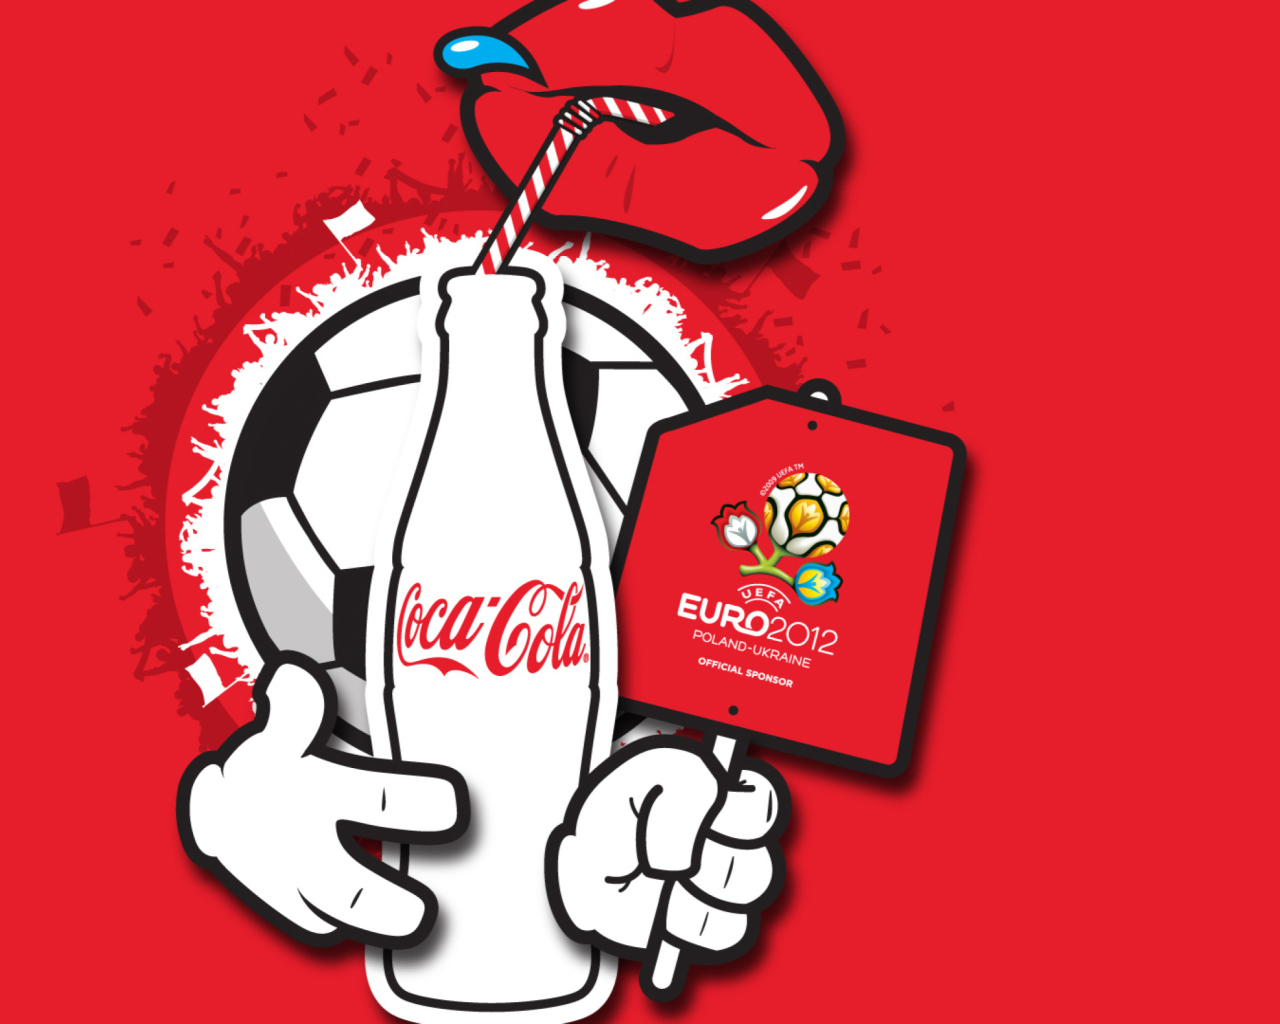 Fondo de pantalla Coca Cola & Euro 2012 full hd 1280x1024